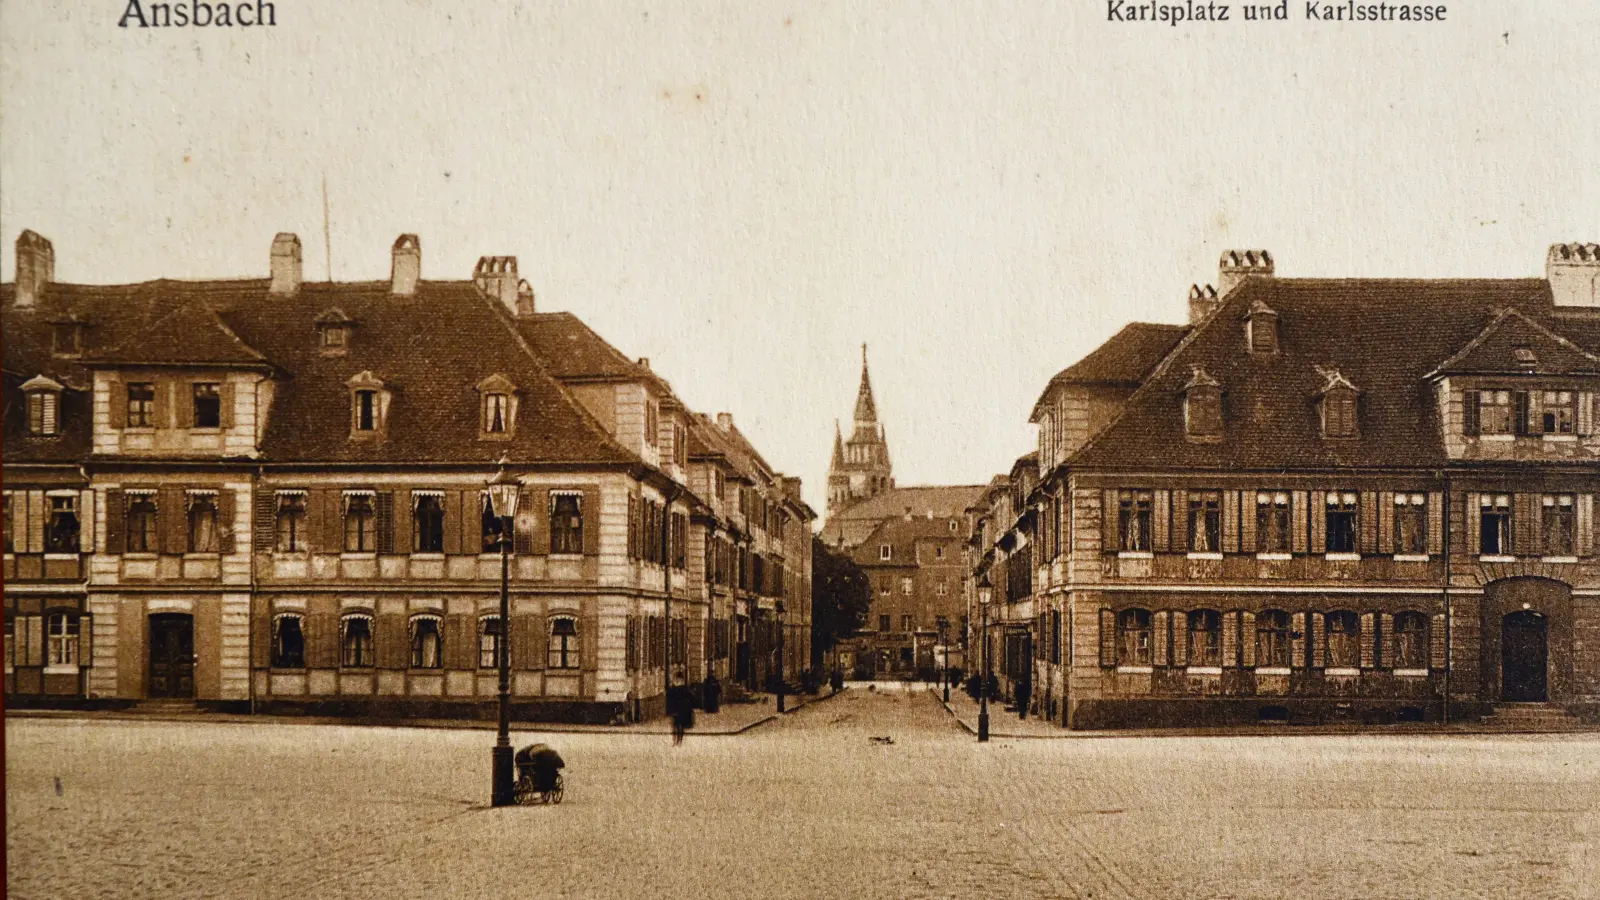 Diese historische Postkarte aus der Sammlung von Klaus Dieter Breitschwert zeigt, wie Karlsplatz und Karlstraße einst ausgesehen haben. Im Herbst 1923 diskutieren die Stadträte über eine Begrünung des Platzes. Dafür werden Sponsoren gesucht. (Repro: Jim Albright)